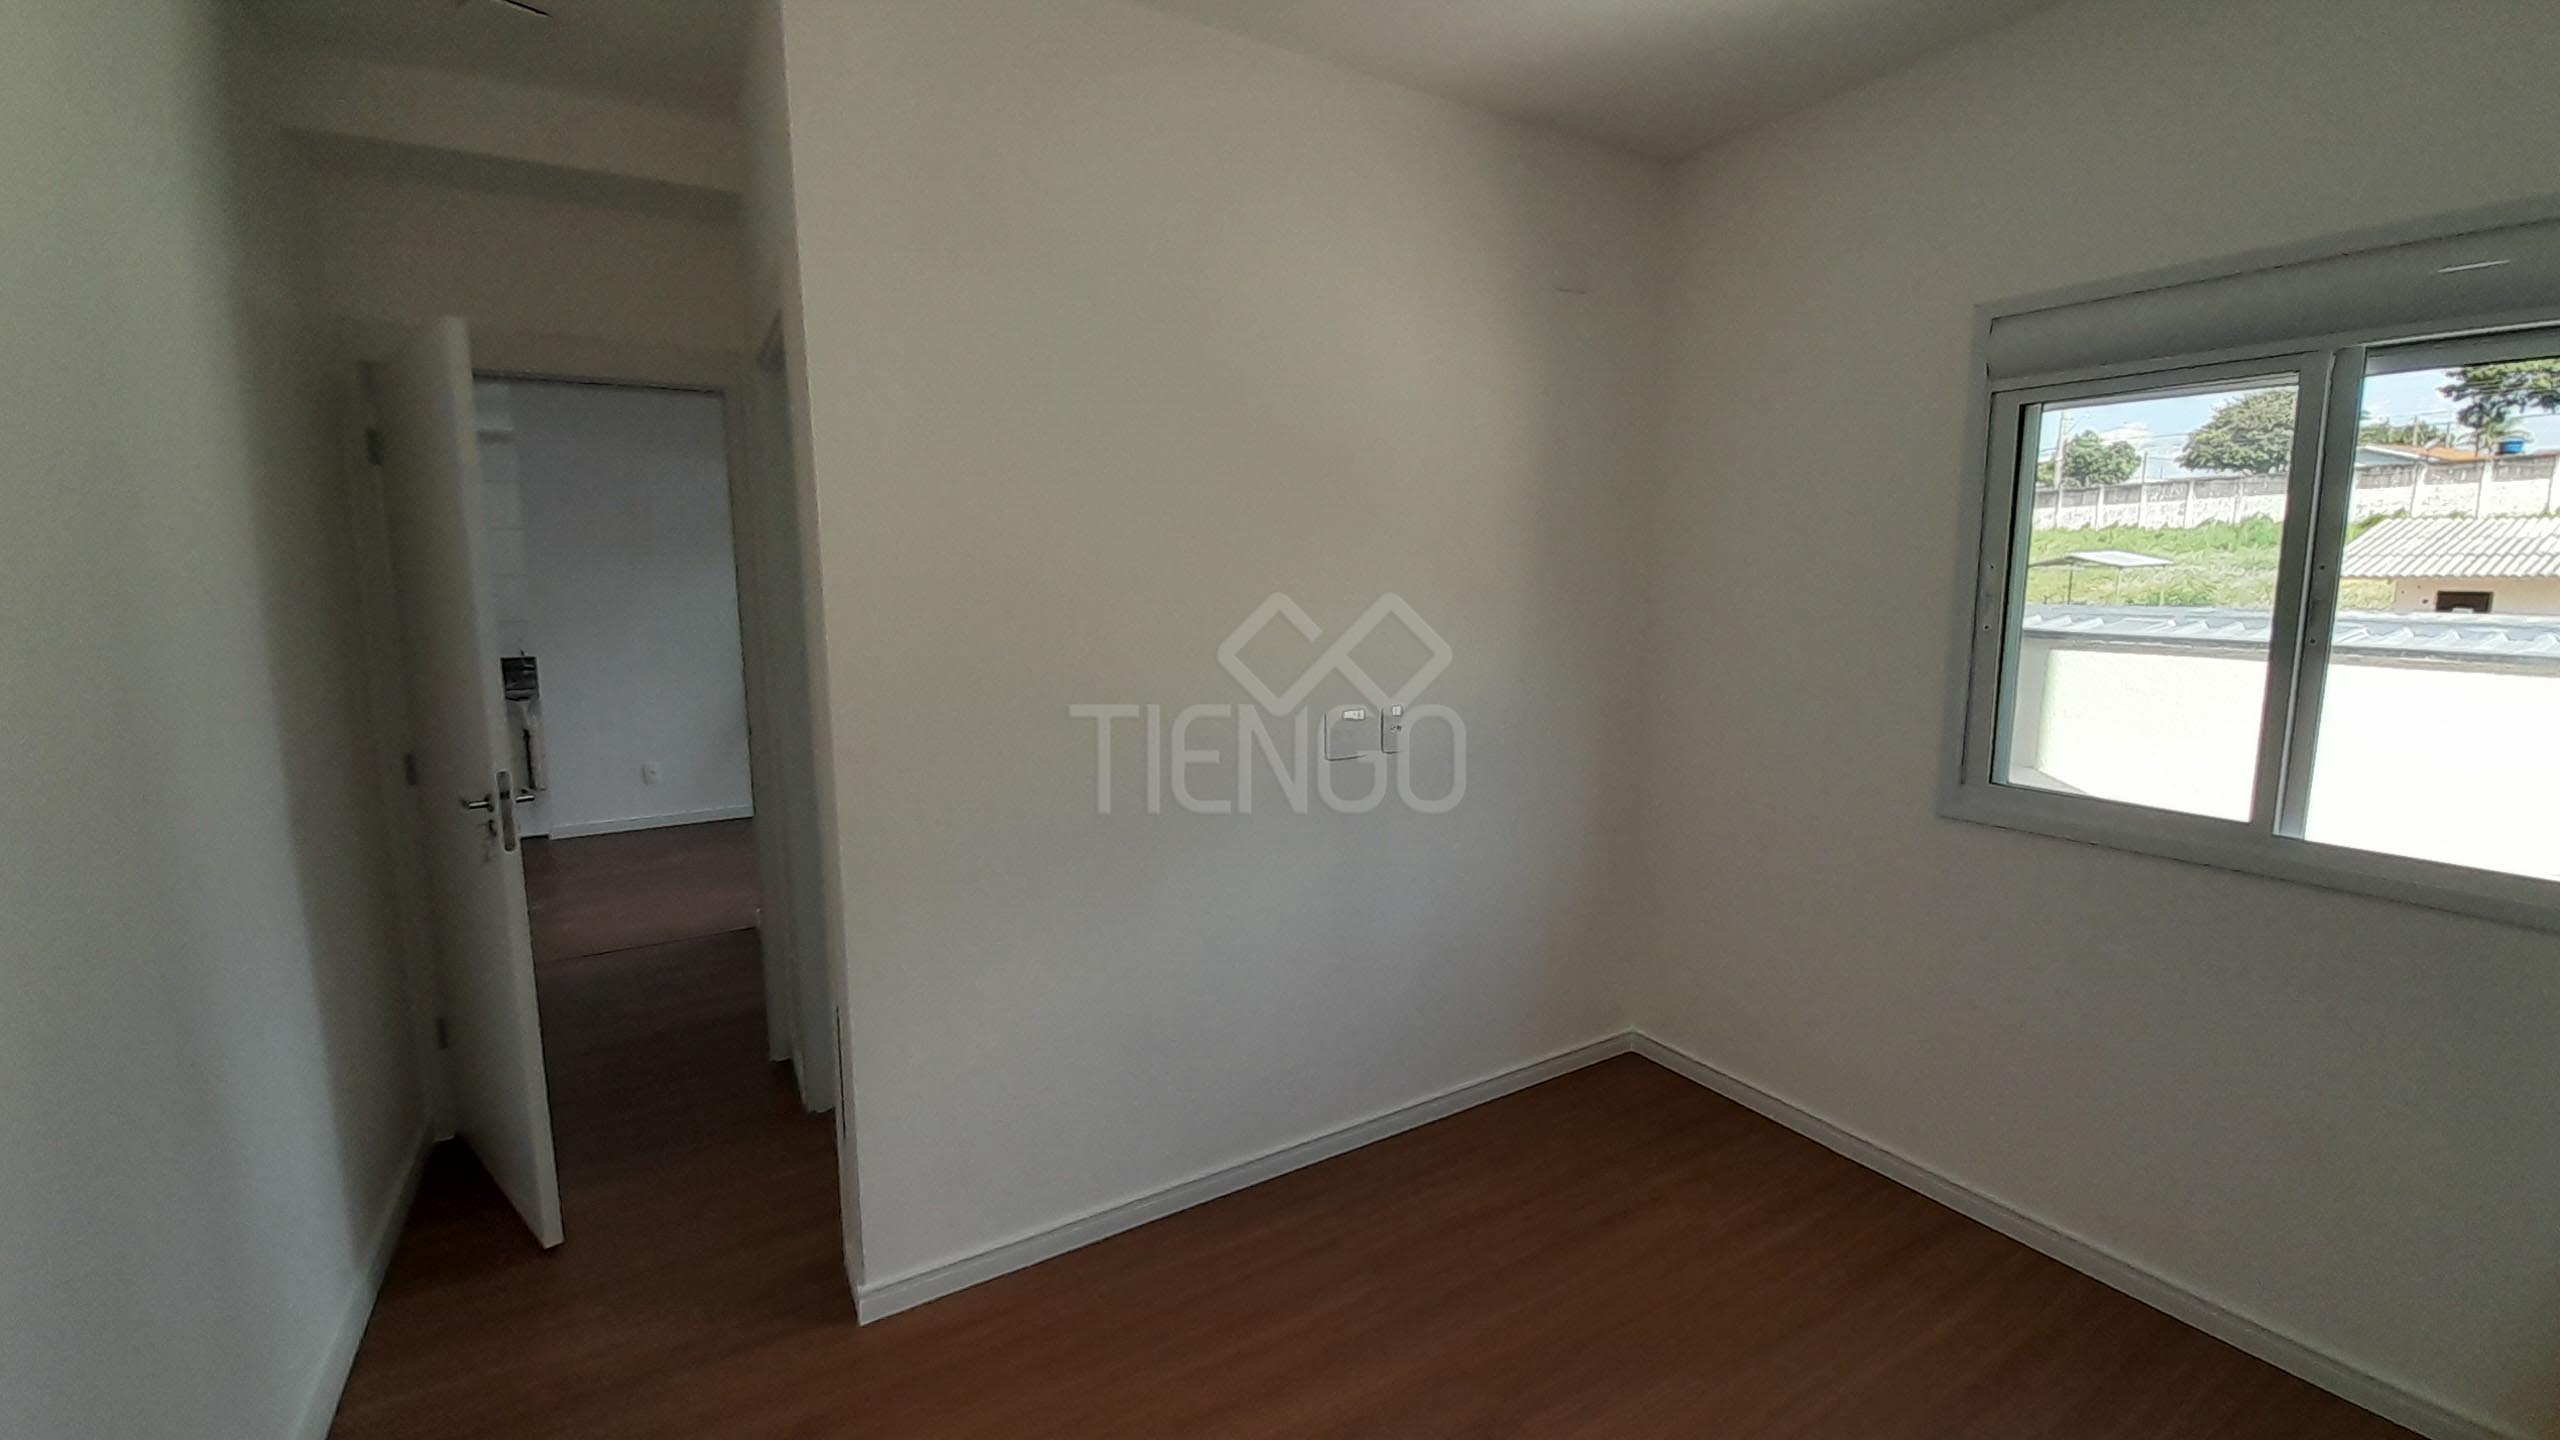 Apartamento no Alto Di Milano - Tiengo - A sua imobiliária em Limeira